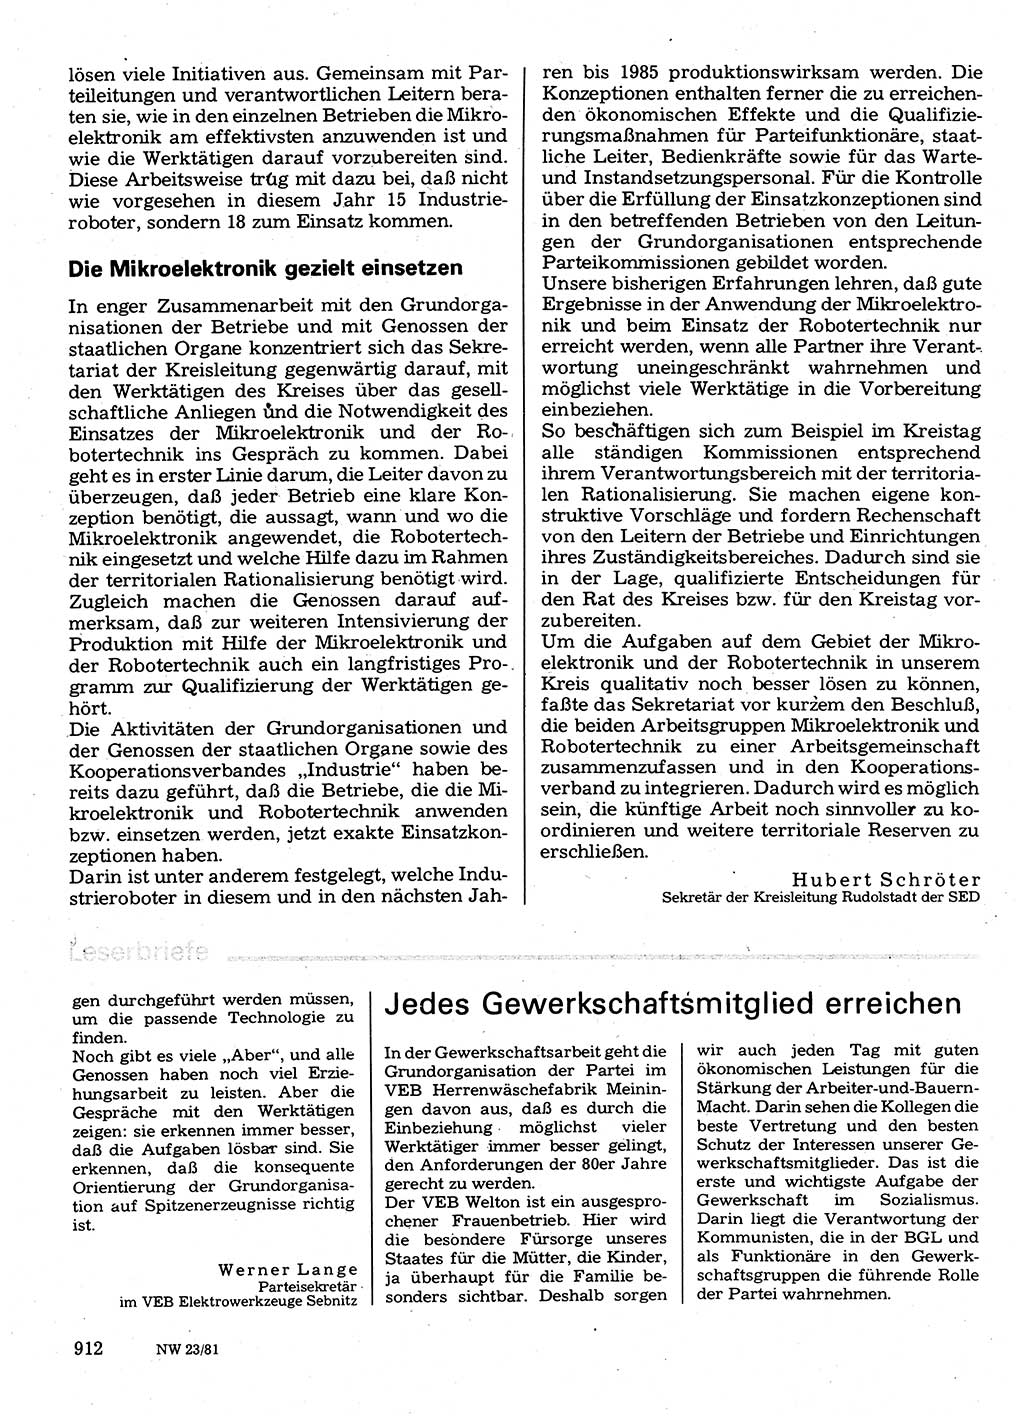 Neuer Weg (NW), Organ des Zentralkomitees (ZK) der SED (Sozialistische Einheitspartei Deutschlands) für Fragen des Parteilebens, 36. Jahrgang [Deutsche Demokratische Republik (DDR)] 1981, Seite 912 (NW ZK SED DDR 1981, S. 912)